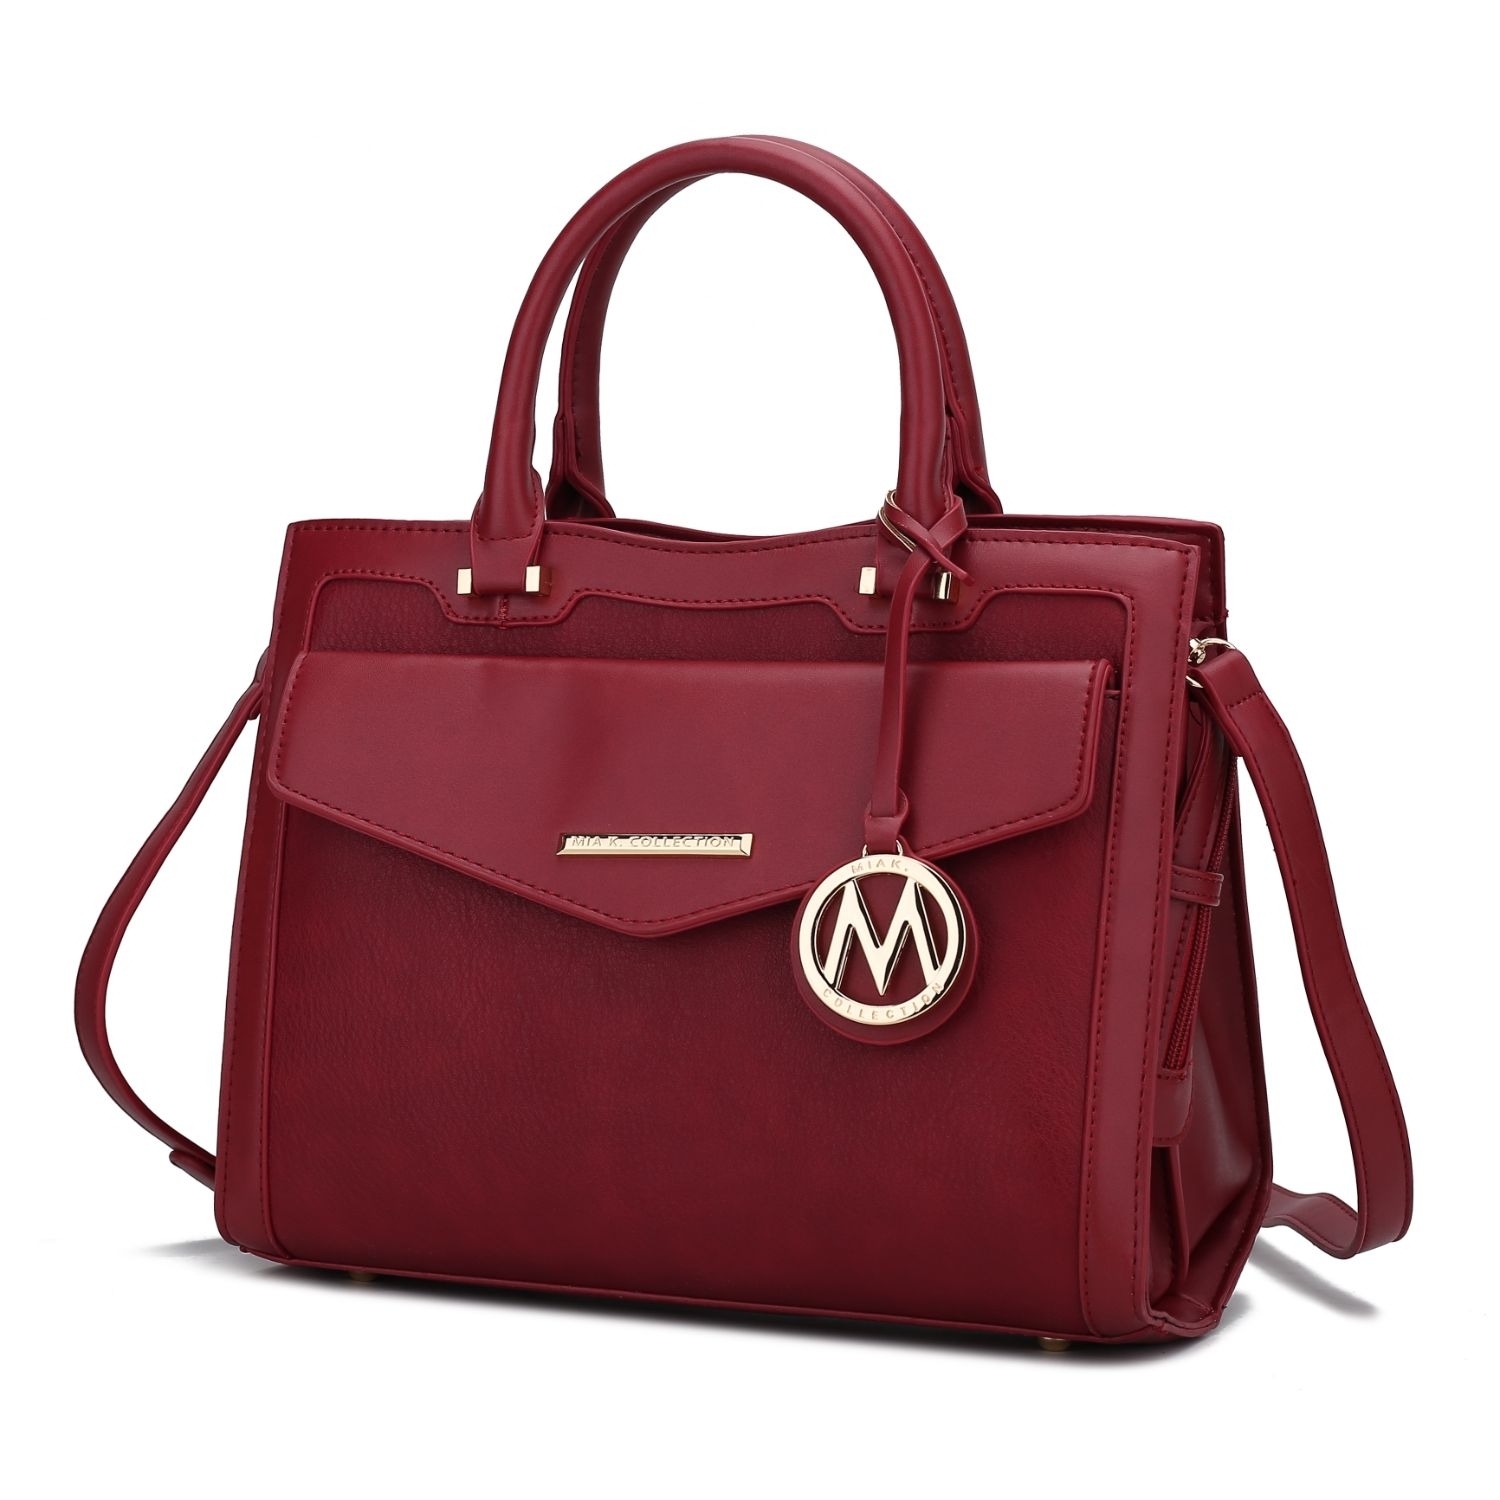 MKF Collection Alyssa Satchel Handbag By Mia K. - Wine